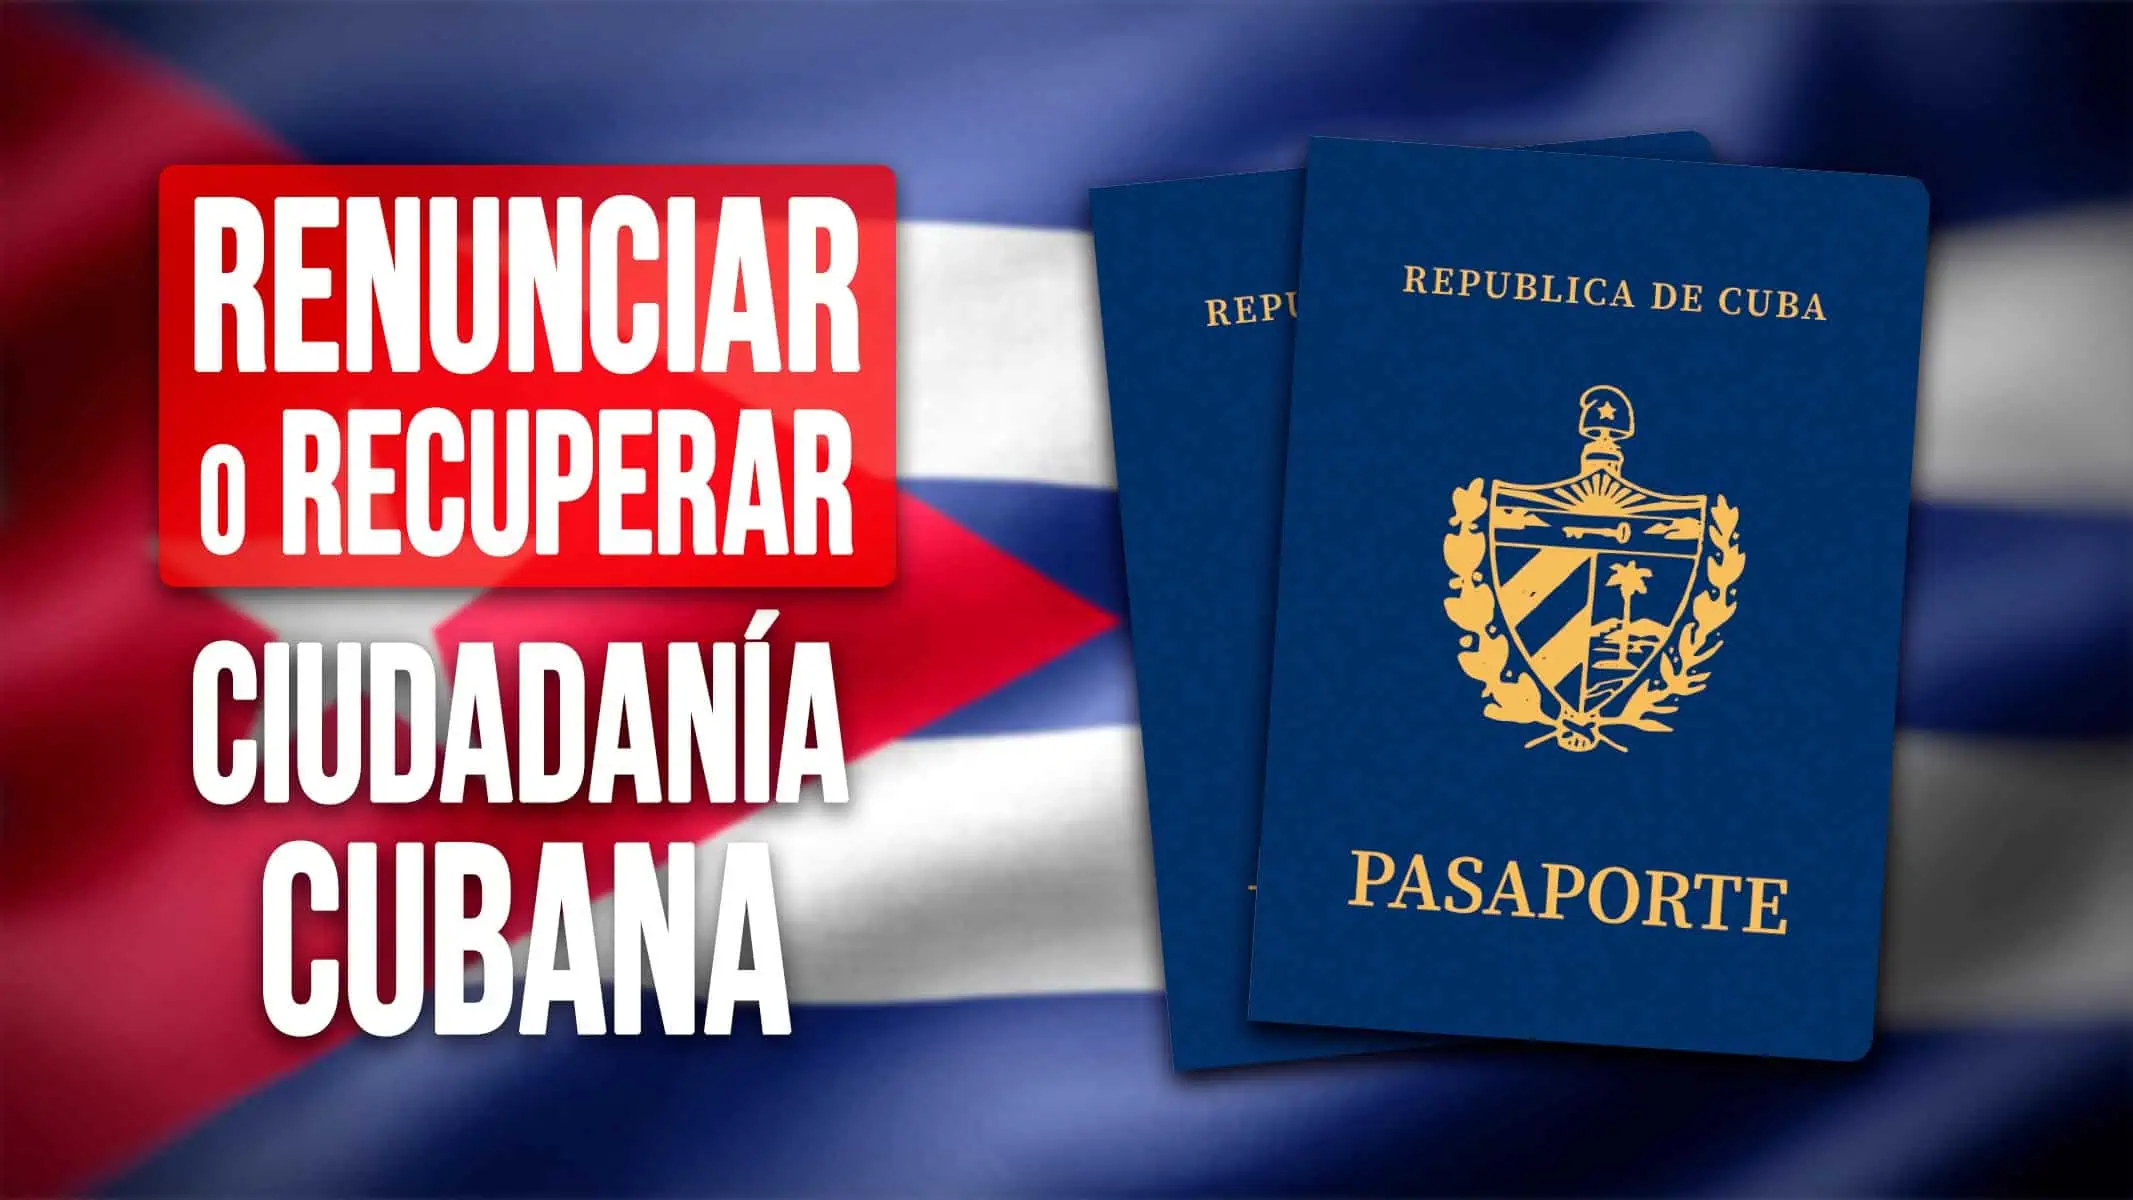 ¿Quieres Renunciar o Recuperar tu Ciudadanía Cubana? Conoce los Nuevos Cambios